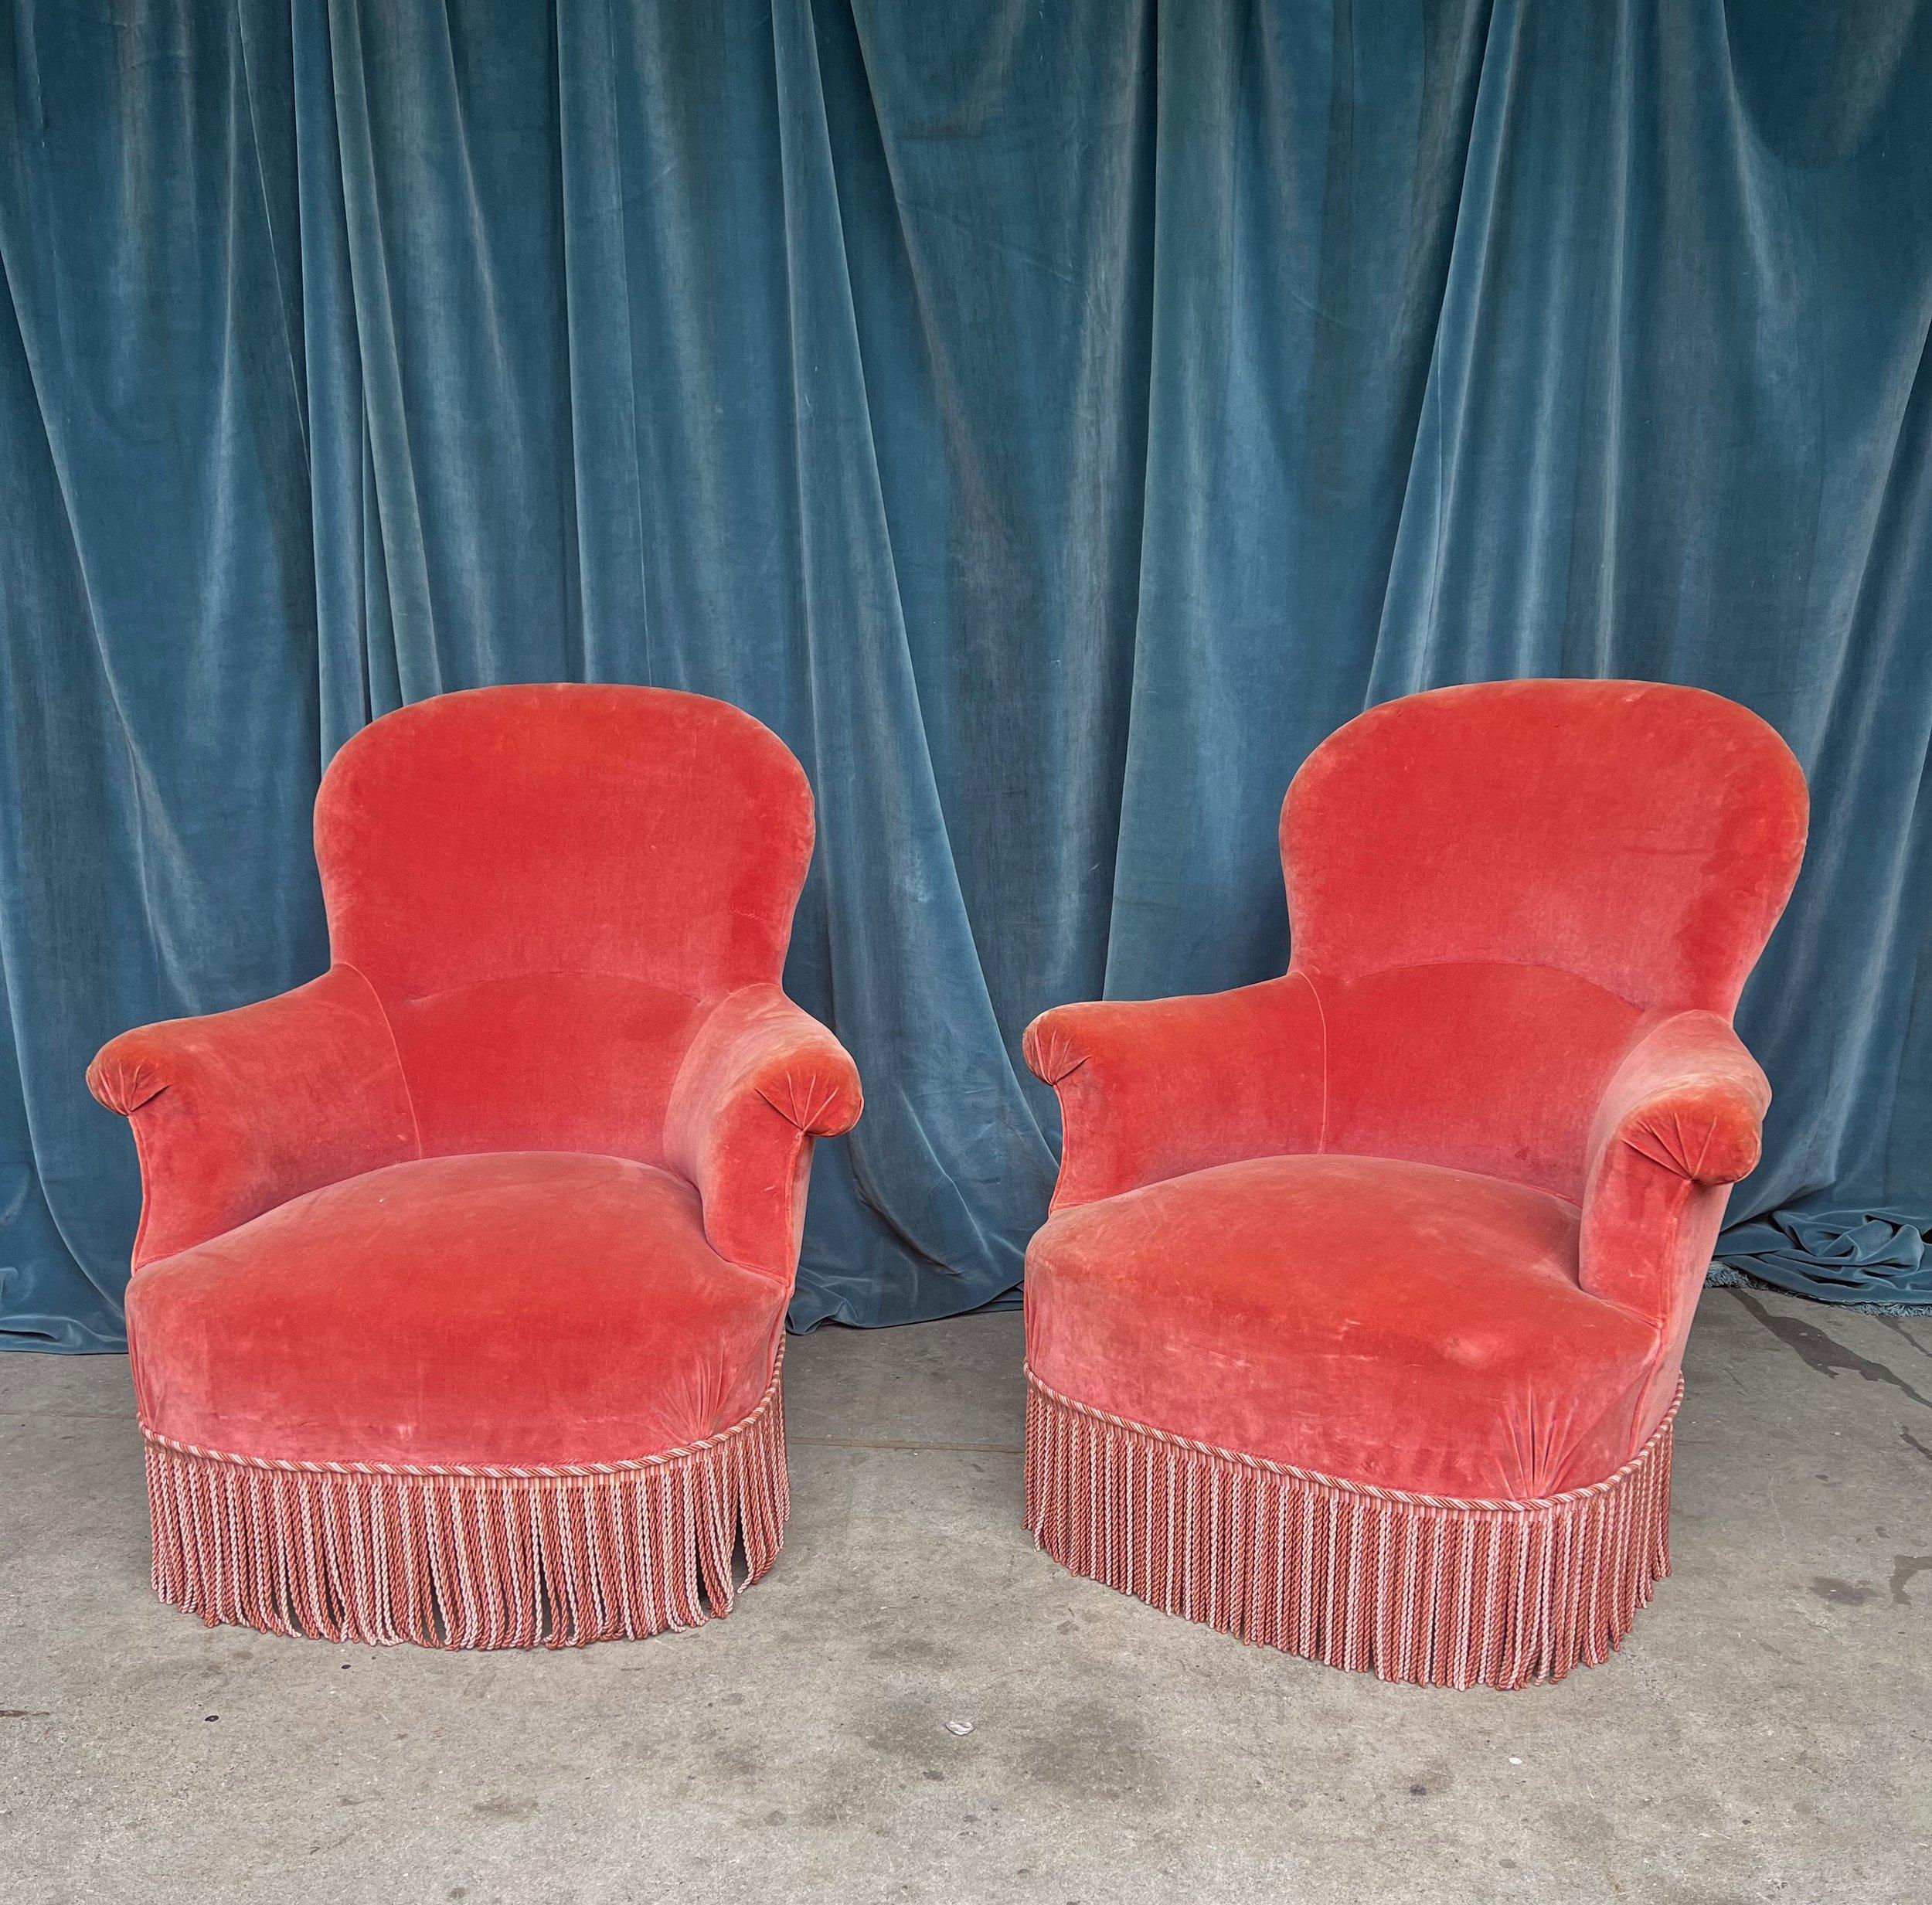 Une paire de fauteuils Napoléon III du XIXe siècle, aux proportions merveilleuses, dégageant une élégance et une sophistication intemporelles. Ces superbes chaises sont tapissées de velours rose vintage, complété par une frange bullion contrastante